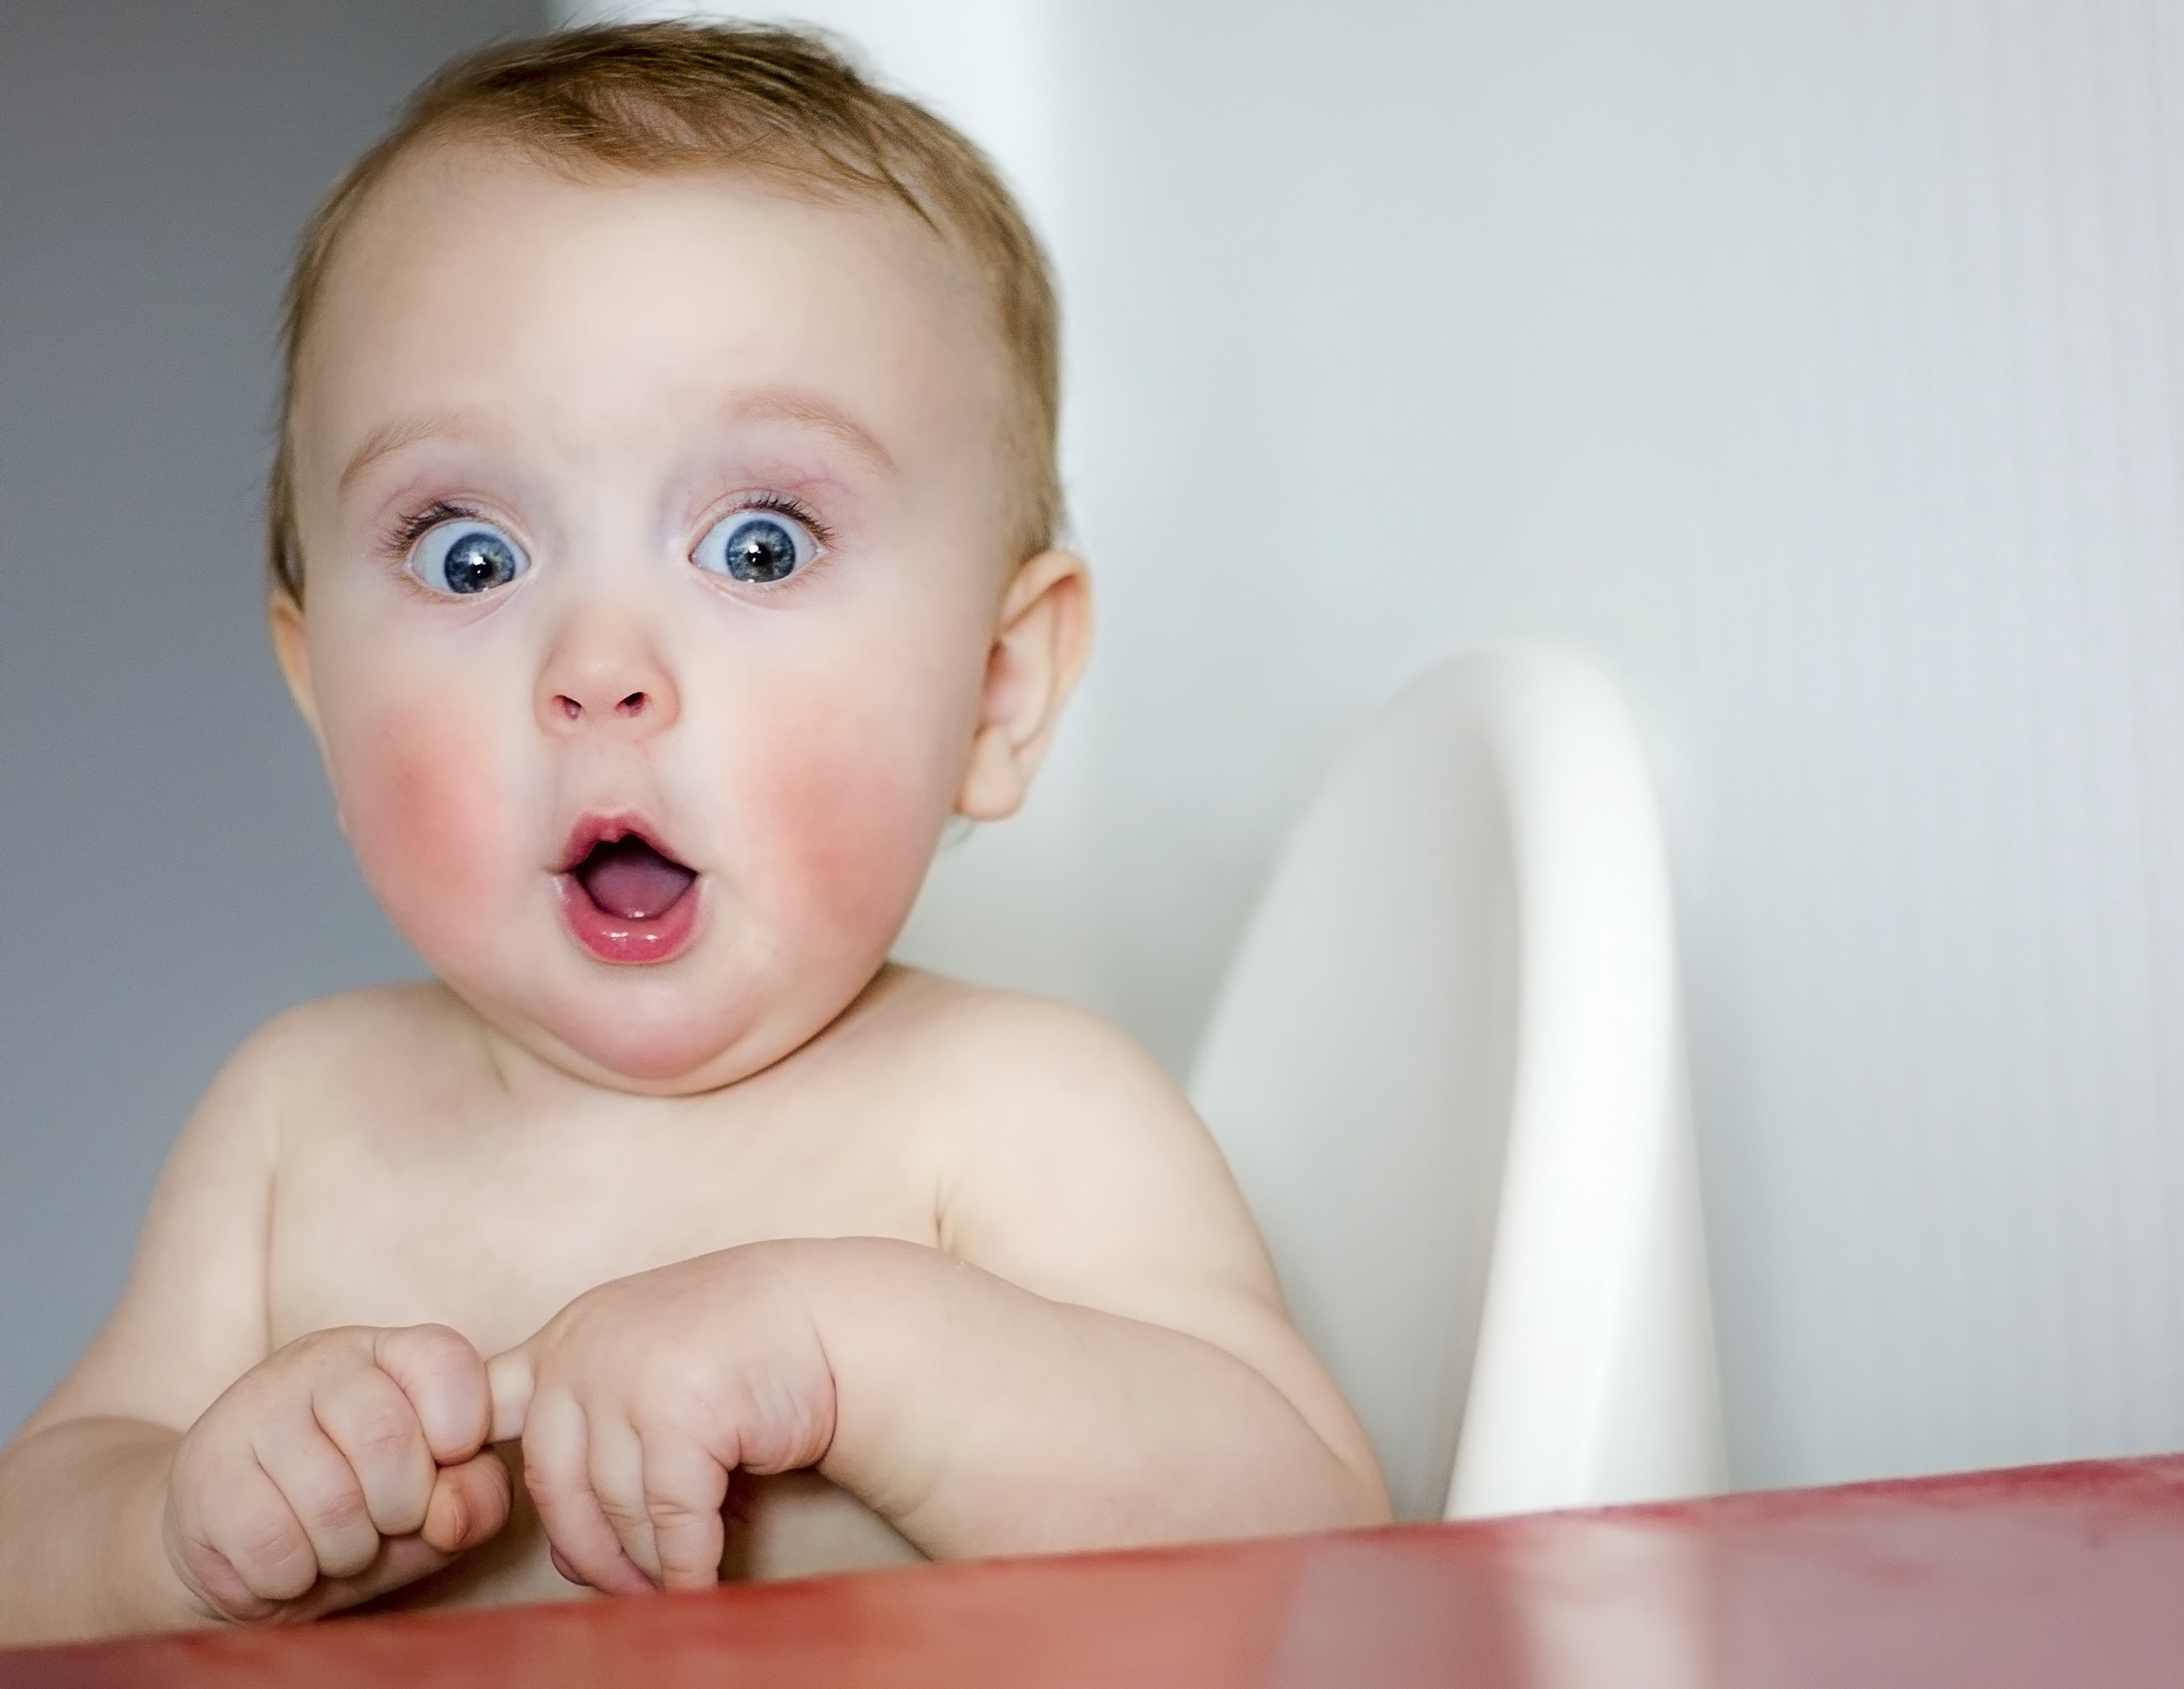 Цвет глаз у ребенка: все предсказуемо или ждать сюрприза?